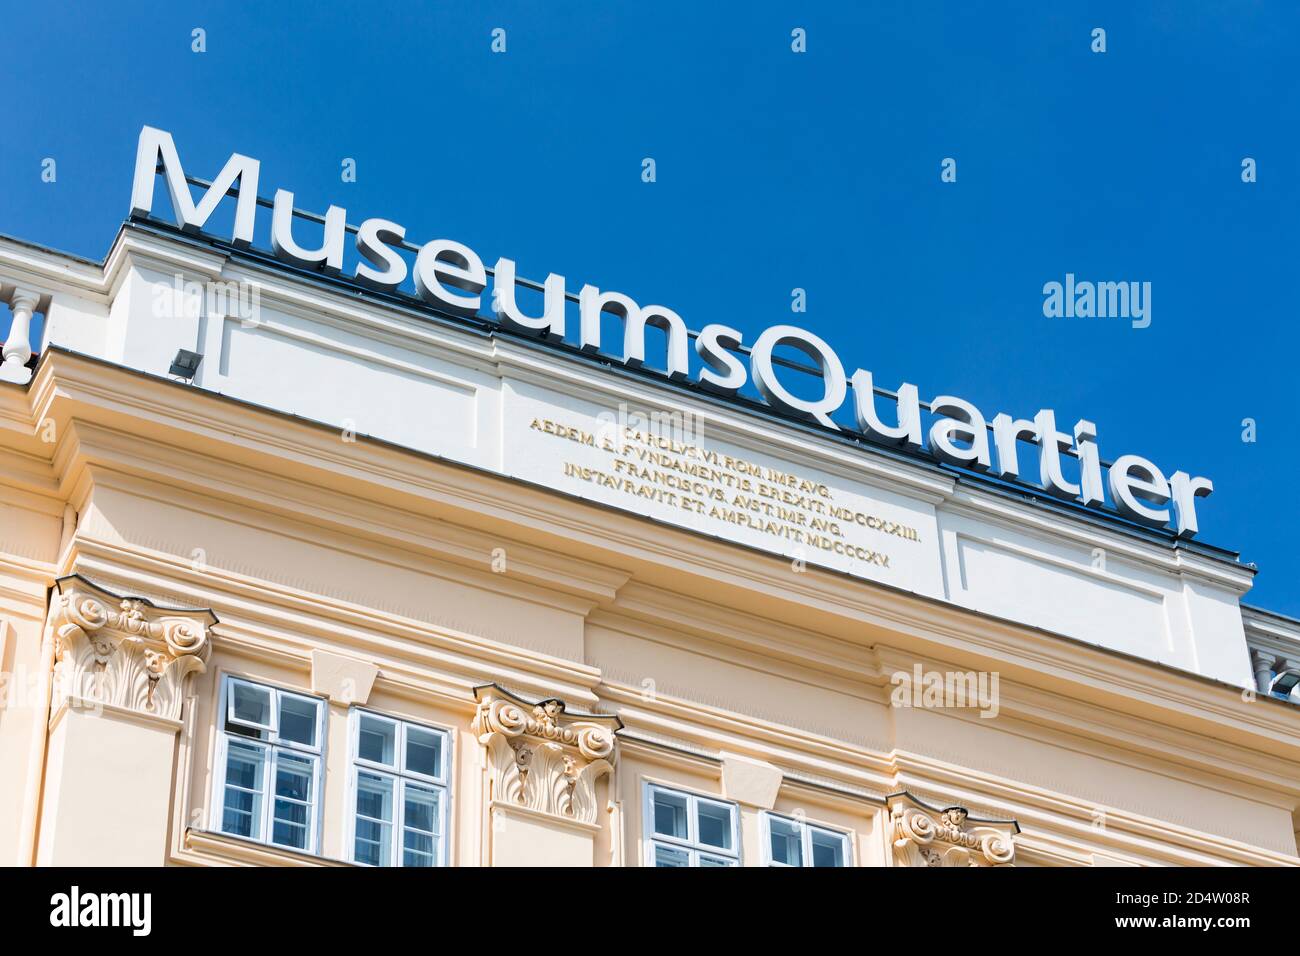 VIENNE - MAI 3 : bâtiment principal du Museumsquartier MQ à Vienne, Autriche, avec ciel bleu le 3 mai 2018 Banque D'Images